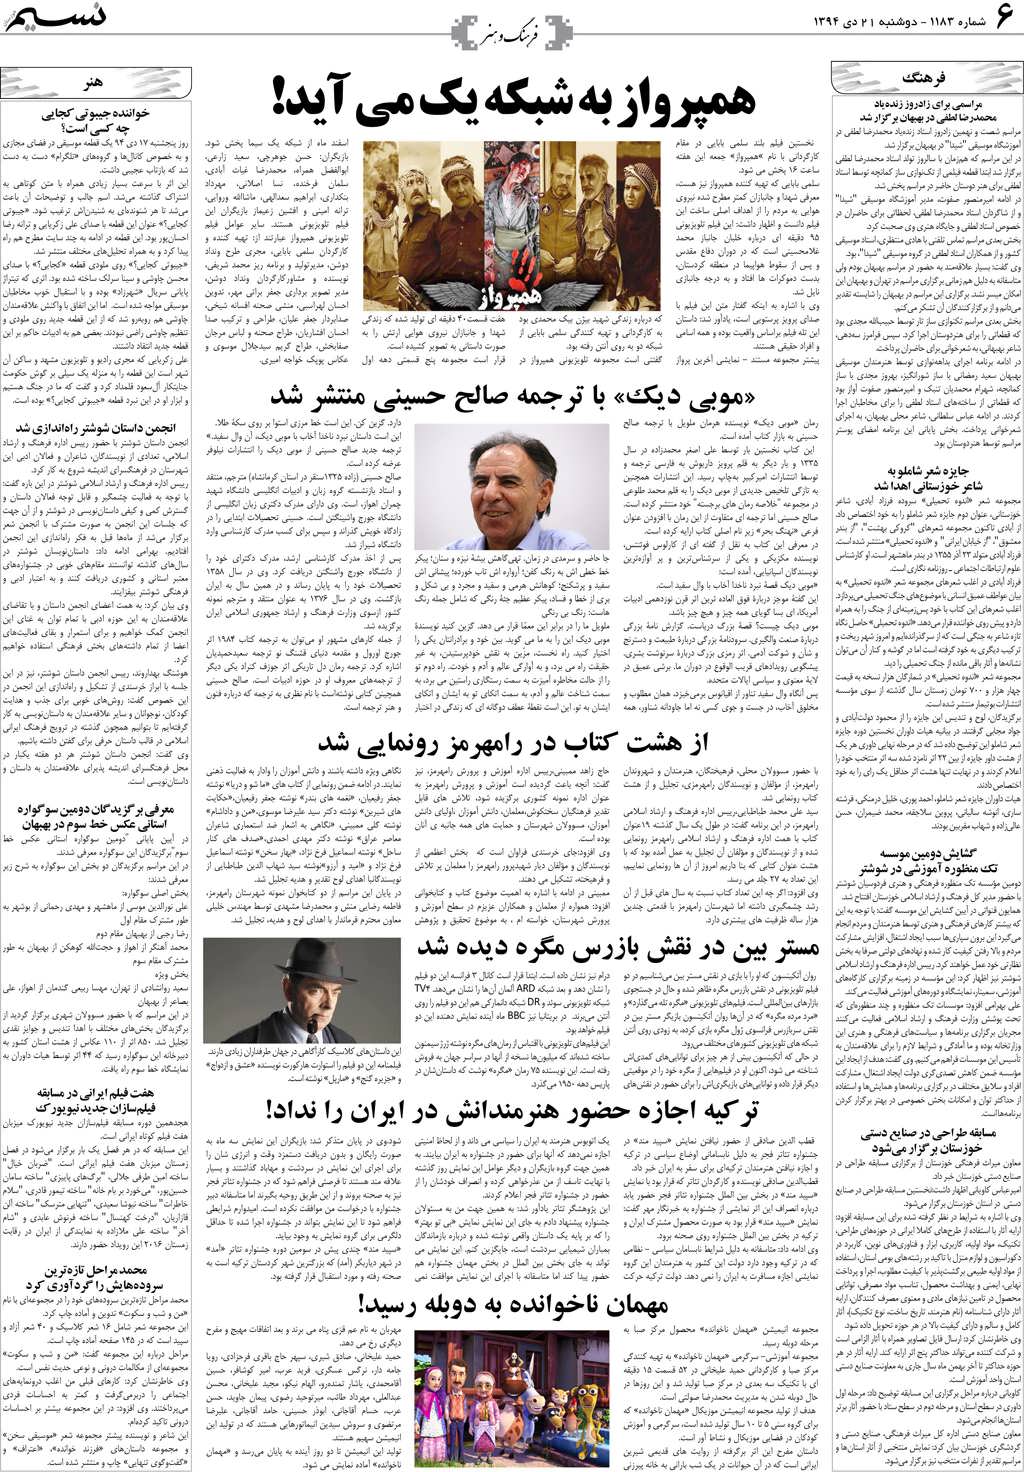 صفحه فرهنگ و هنر روزنامه نسیم شماره 1183